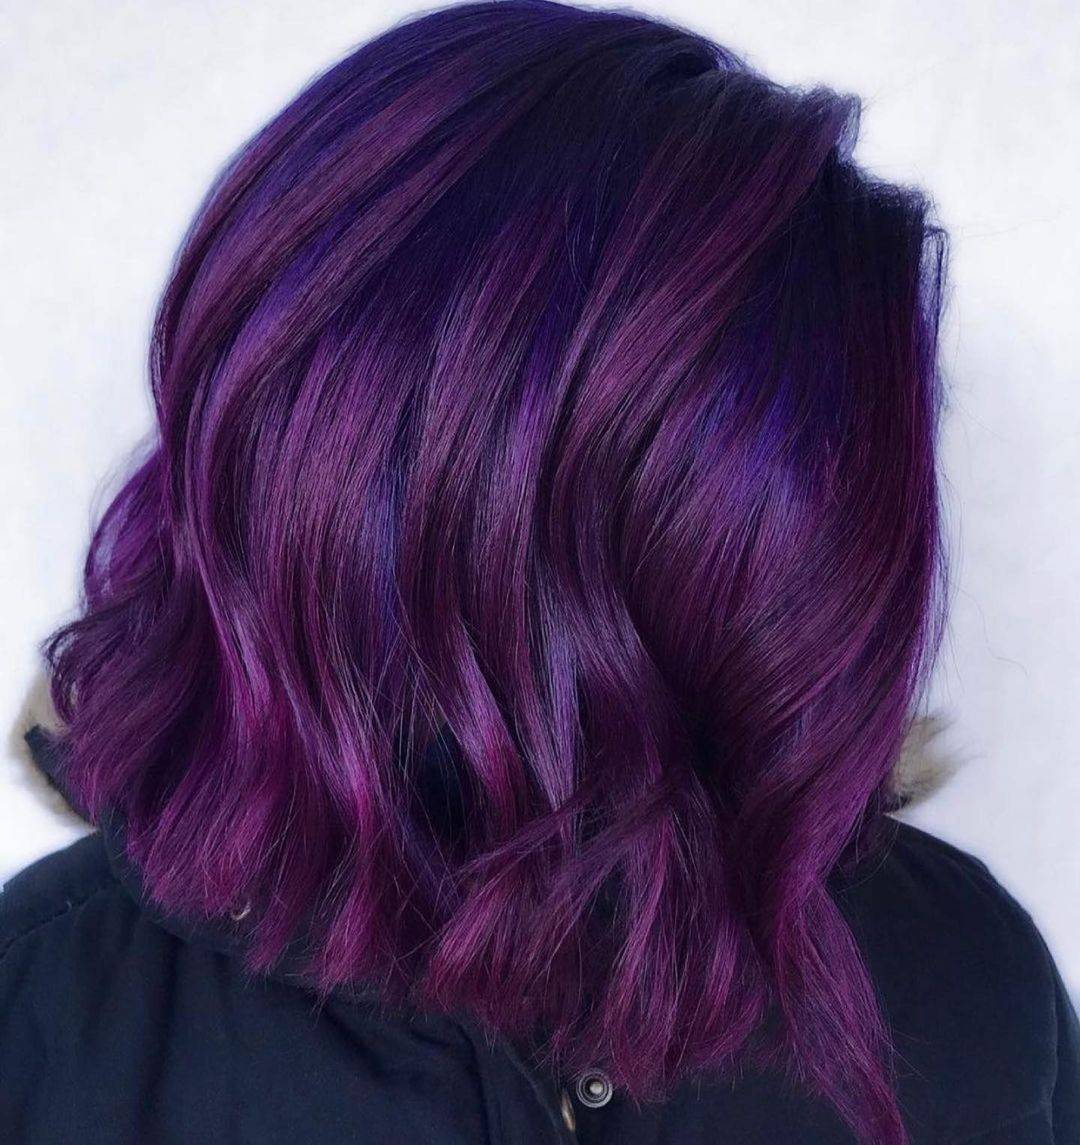 Burgundy hair color 86 burgundy hair color | burgundy hair color for women | burgundy hair color highlights Burgundy Hair Color